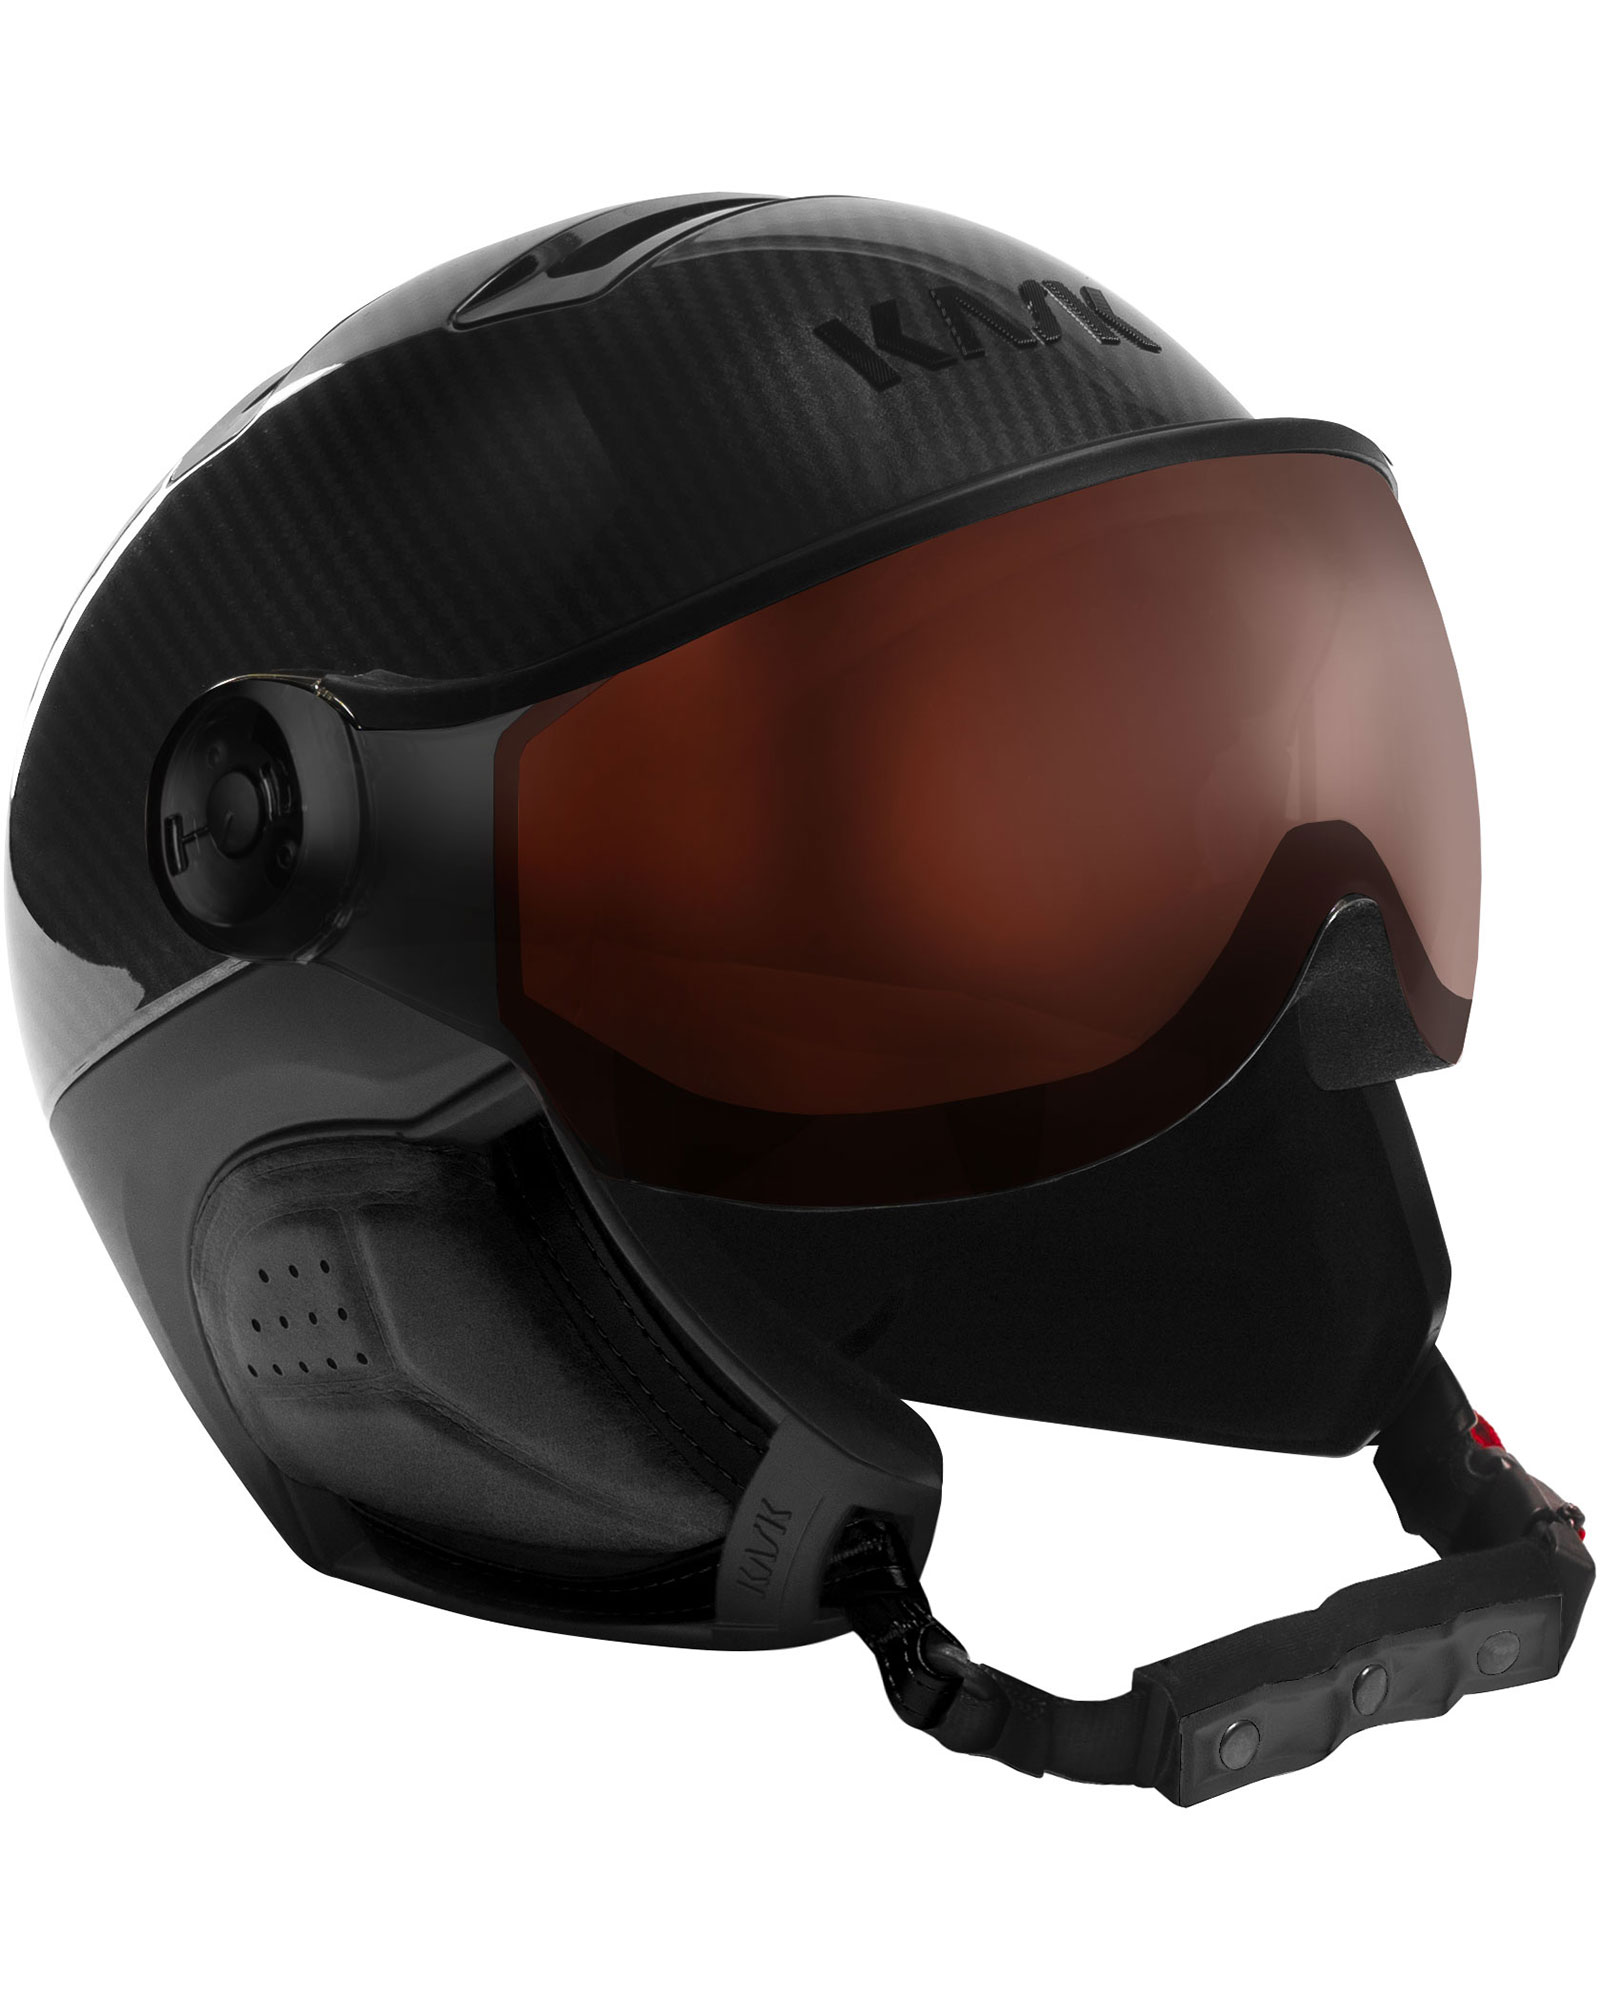 KASK Elite Pro Visor Helmet - Carbon Black - Photochromic Visor XL